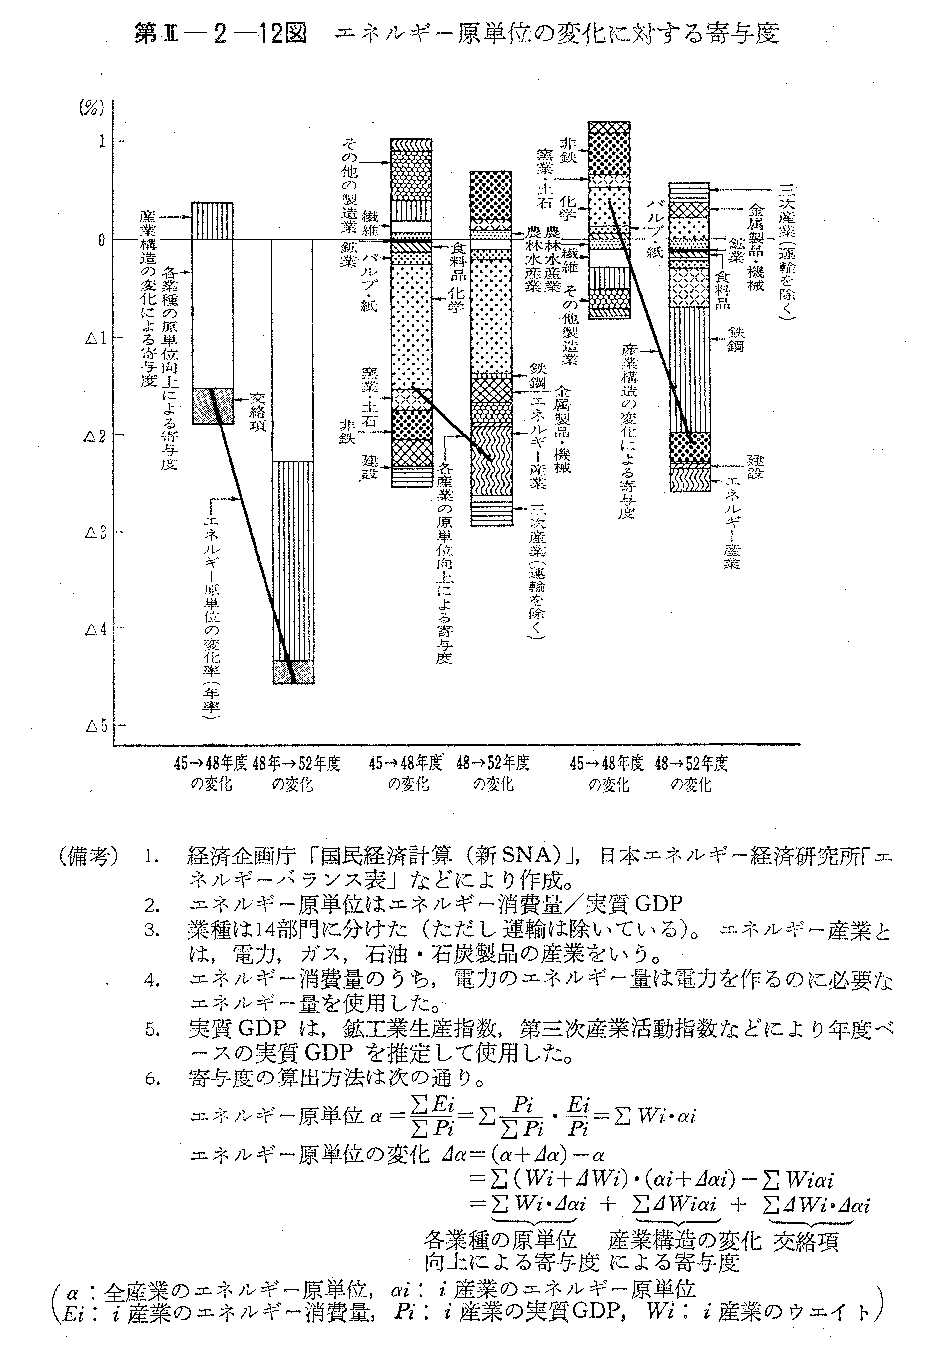 第II-2-12図　エネルギー原単位の変化に対する寄与度